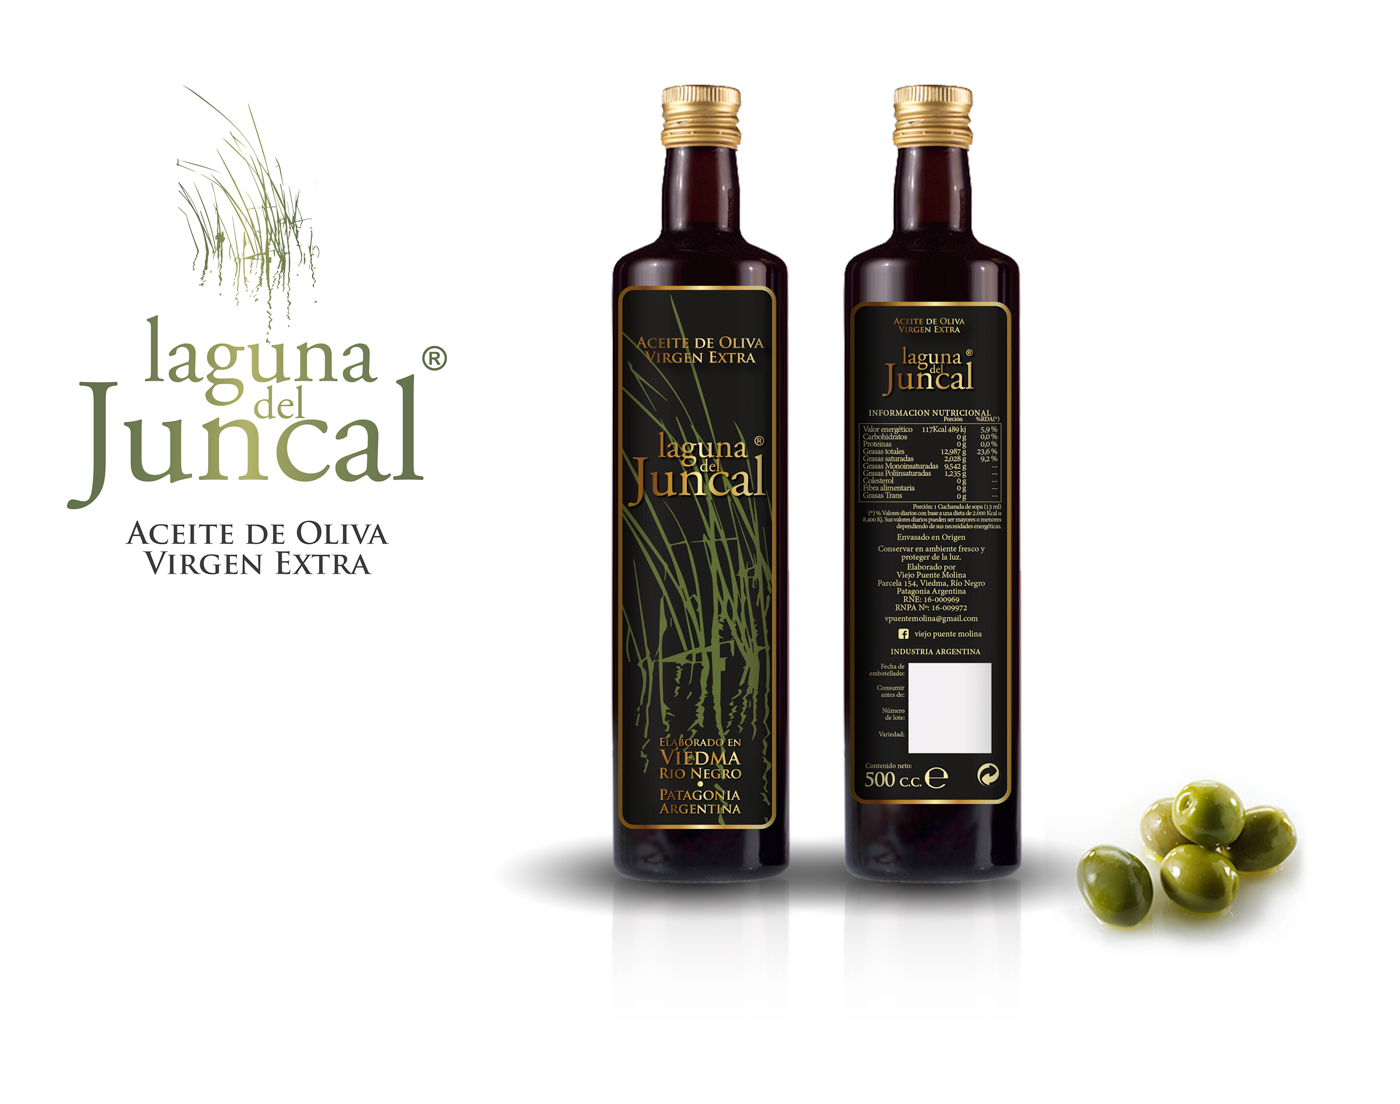 Diseño gráfico y creativo de etiquetas de aceite de oliva virgen extra para la marca en Argentina - LAGUNA DEL JUNCAL